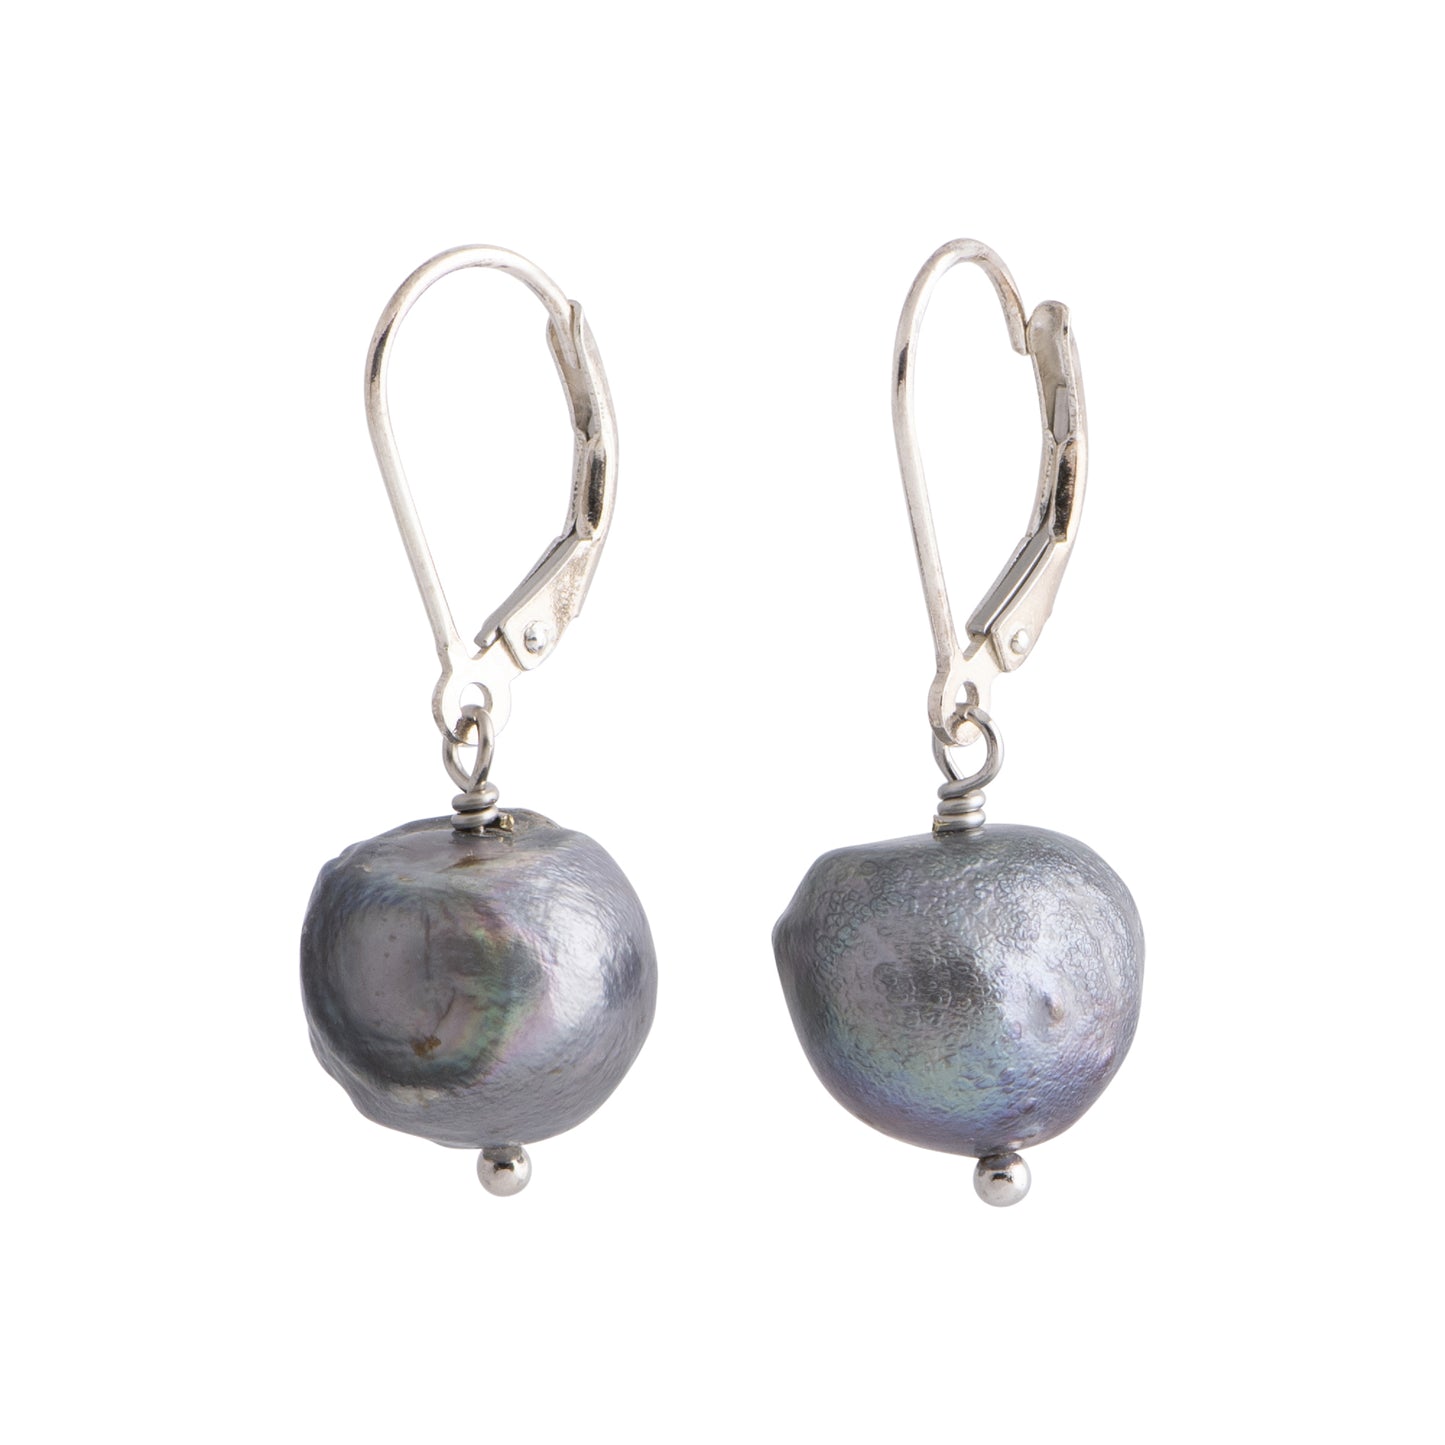 Oceana - Silver-tone pearl hinged earrings (Dark grey pearls)